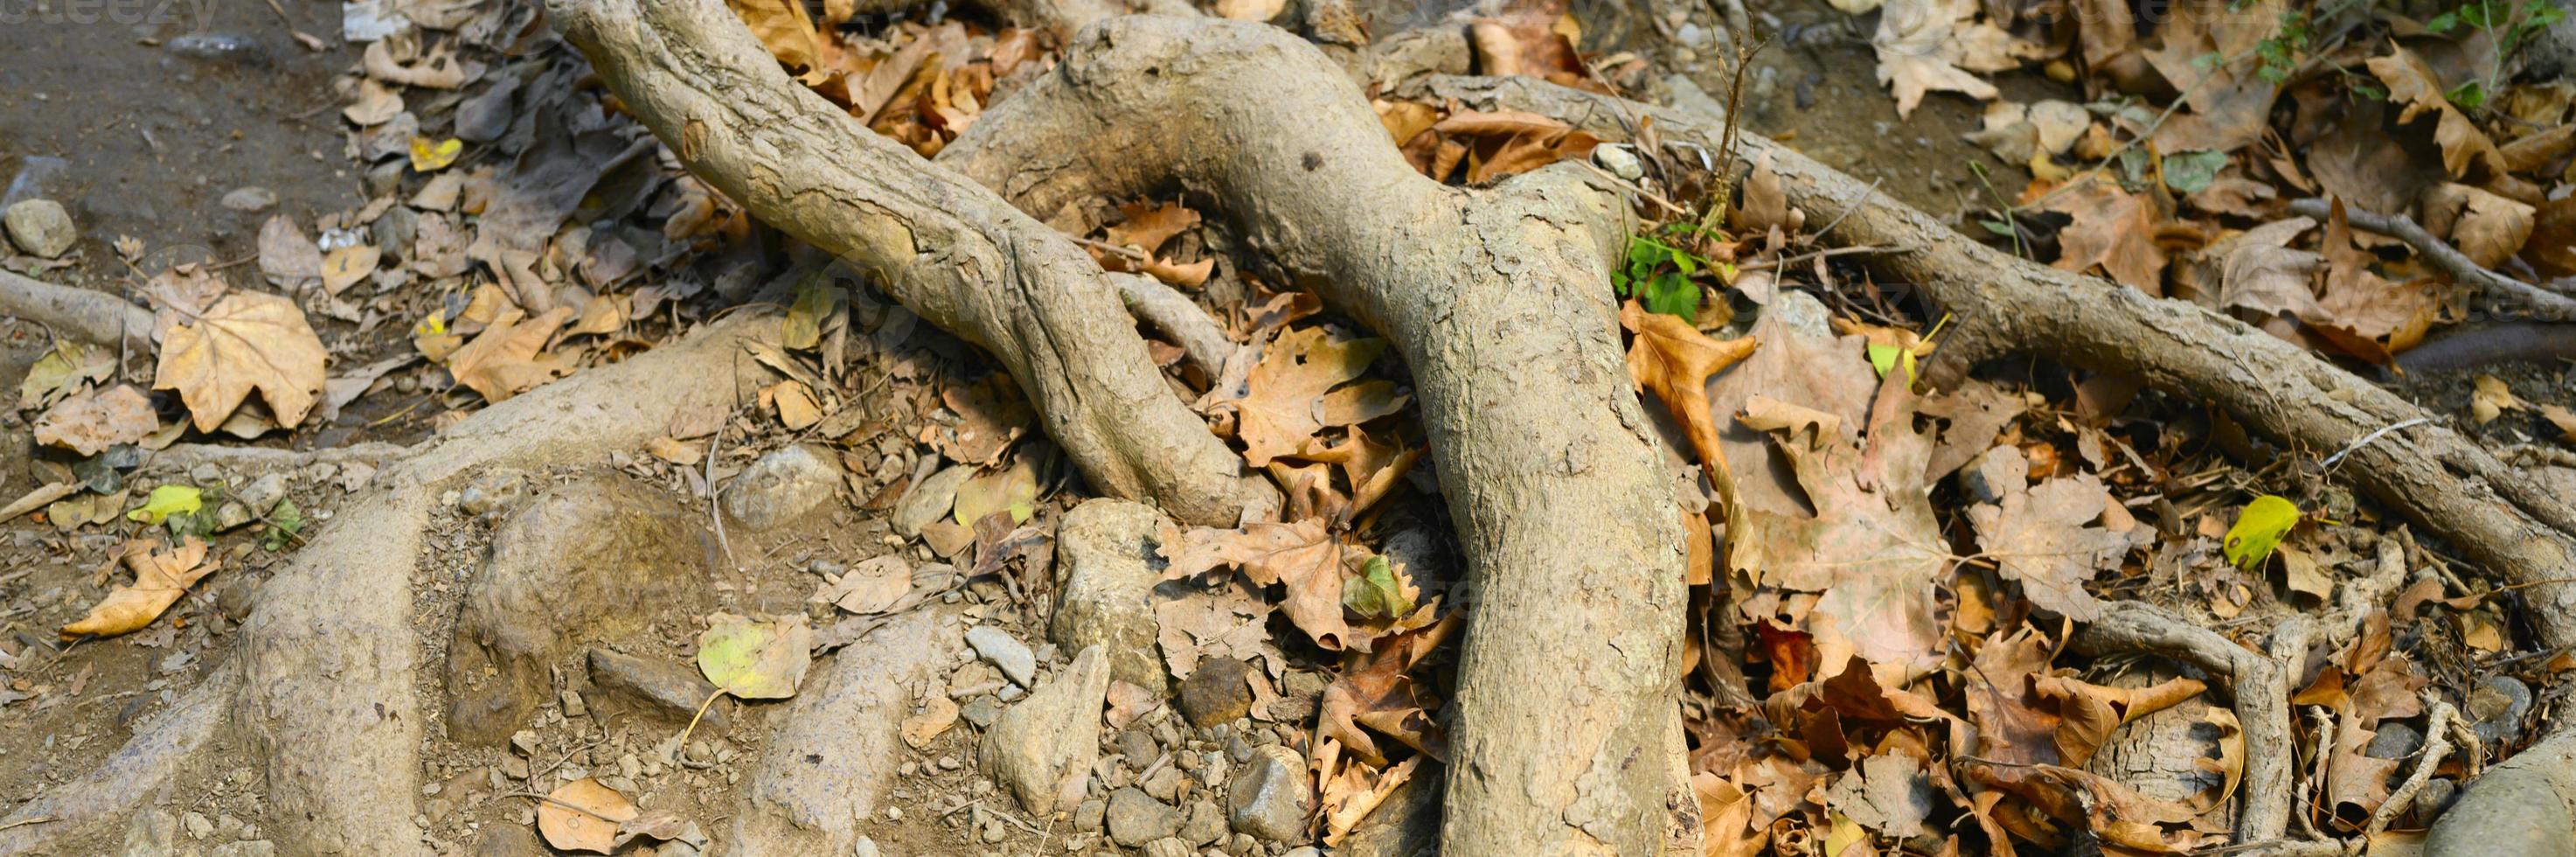 raízes nuas de árvores projetando-se do solo em penhascos rochosos no outono foto